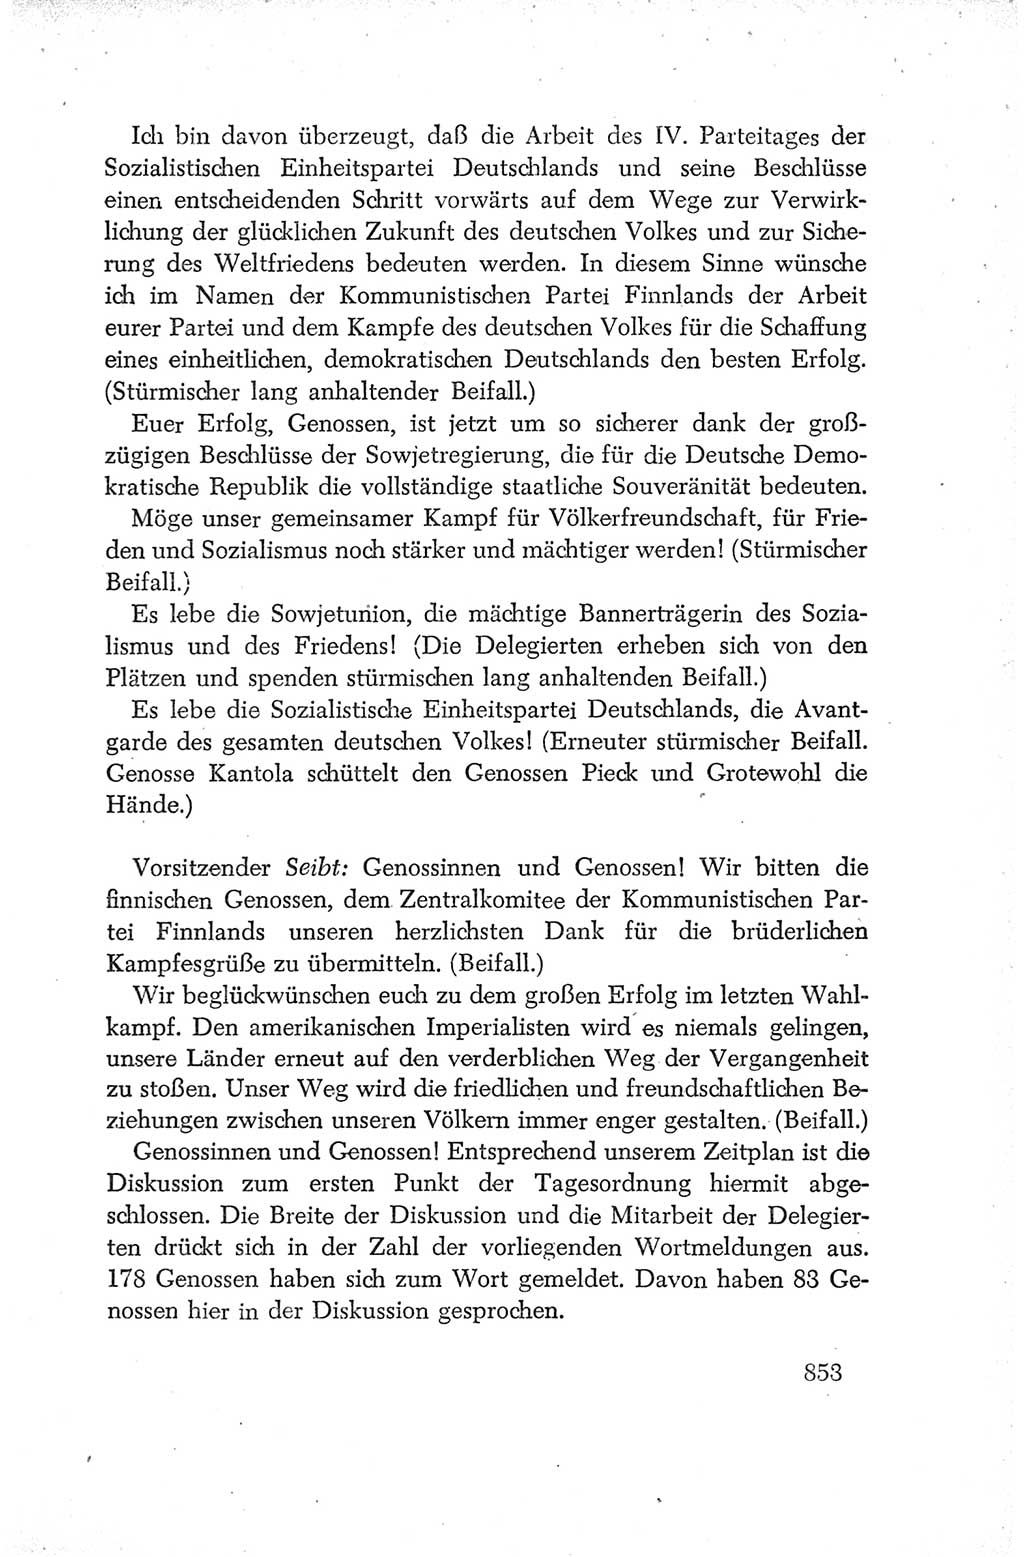 Protokoll der Verhandlungen des Ⅳ. Parteitages der Sozialistischen Einheitspartei Deutschlands (SED) [Deutsche Demokratische Republik (DDR)] 1954, Seite 853